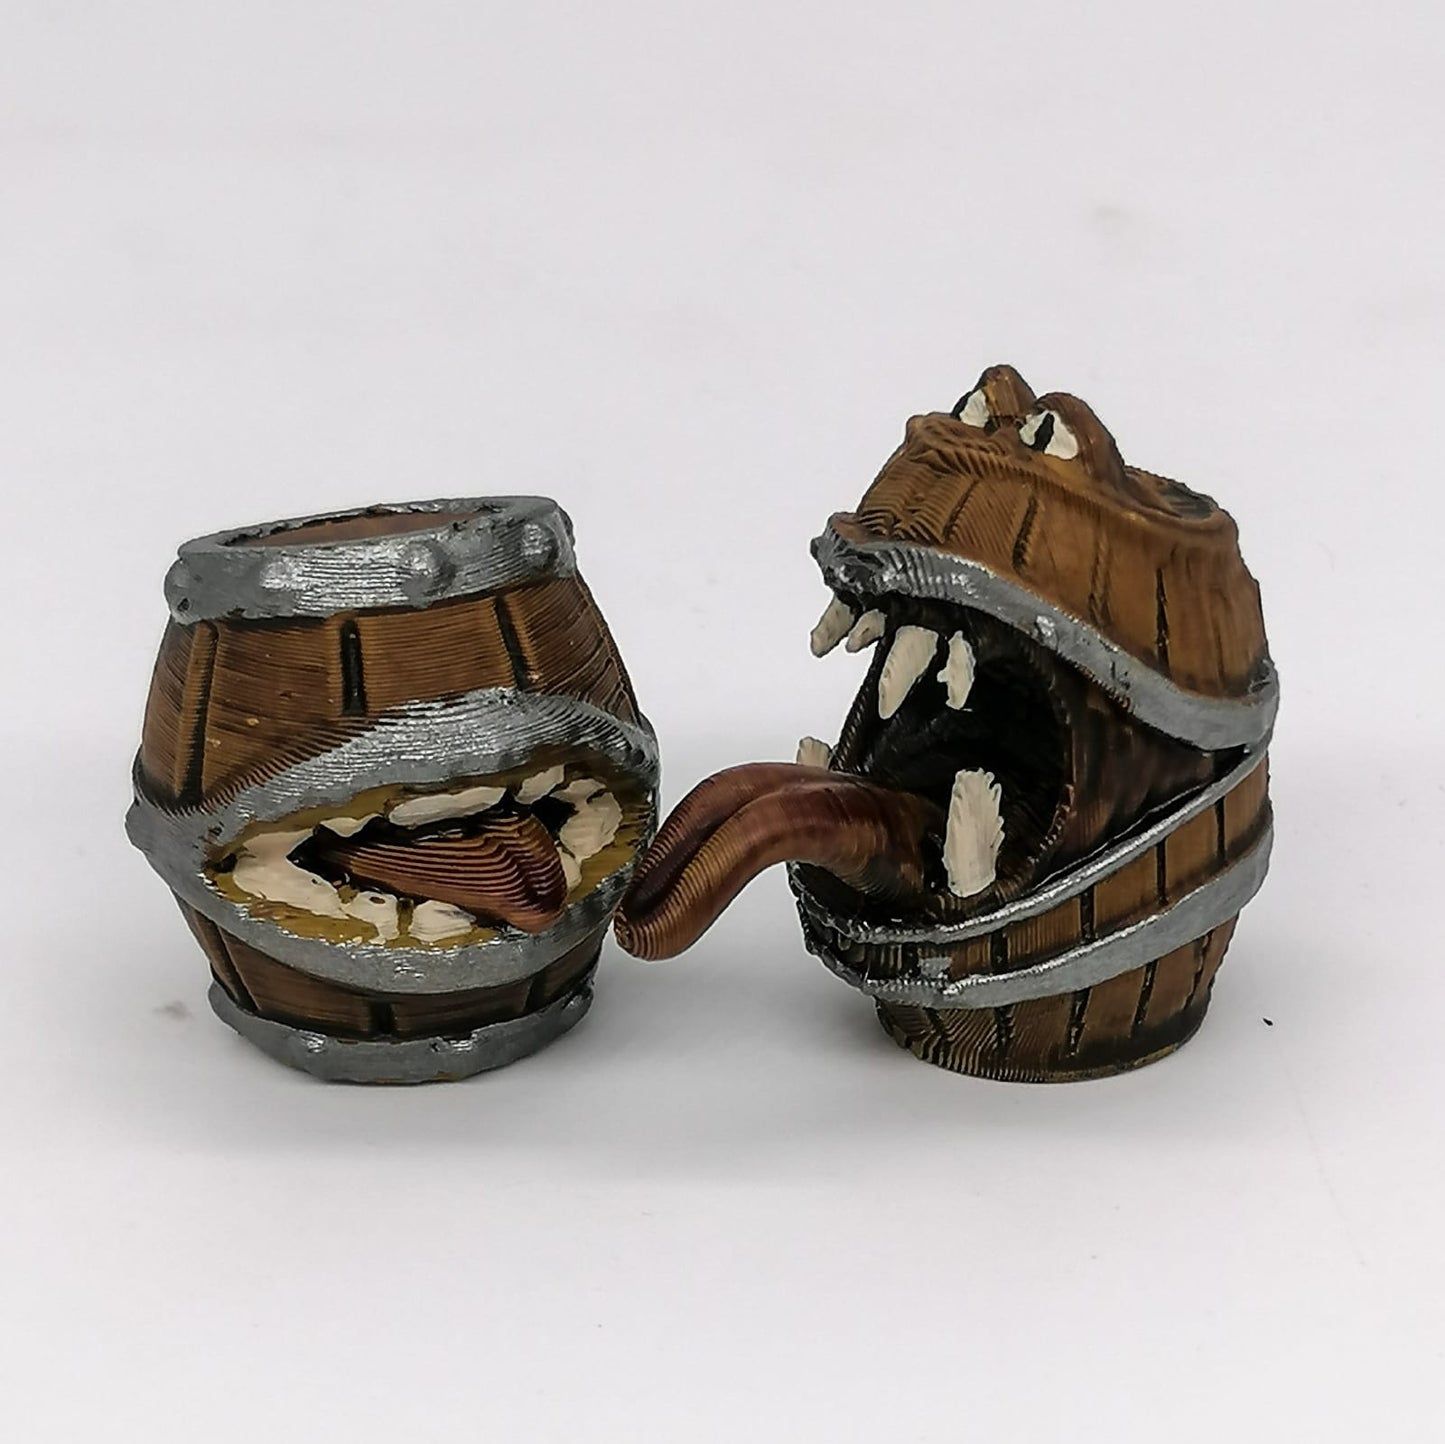 Magische Fässer Miniaturen im Maßstab 1:12 - Monster Fass Duo - Miniaturen